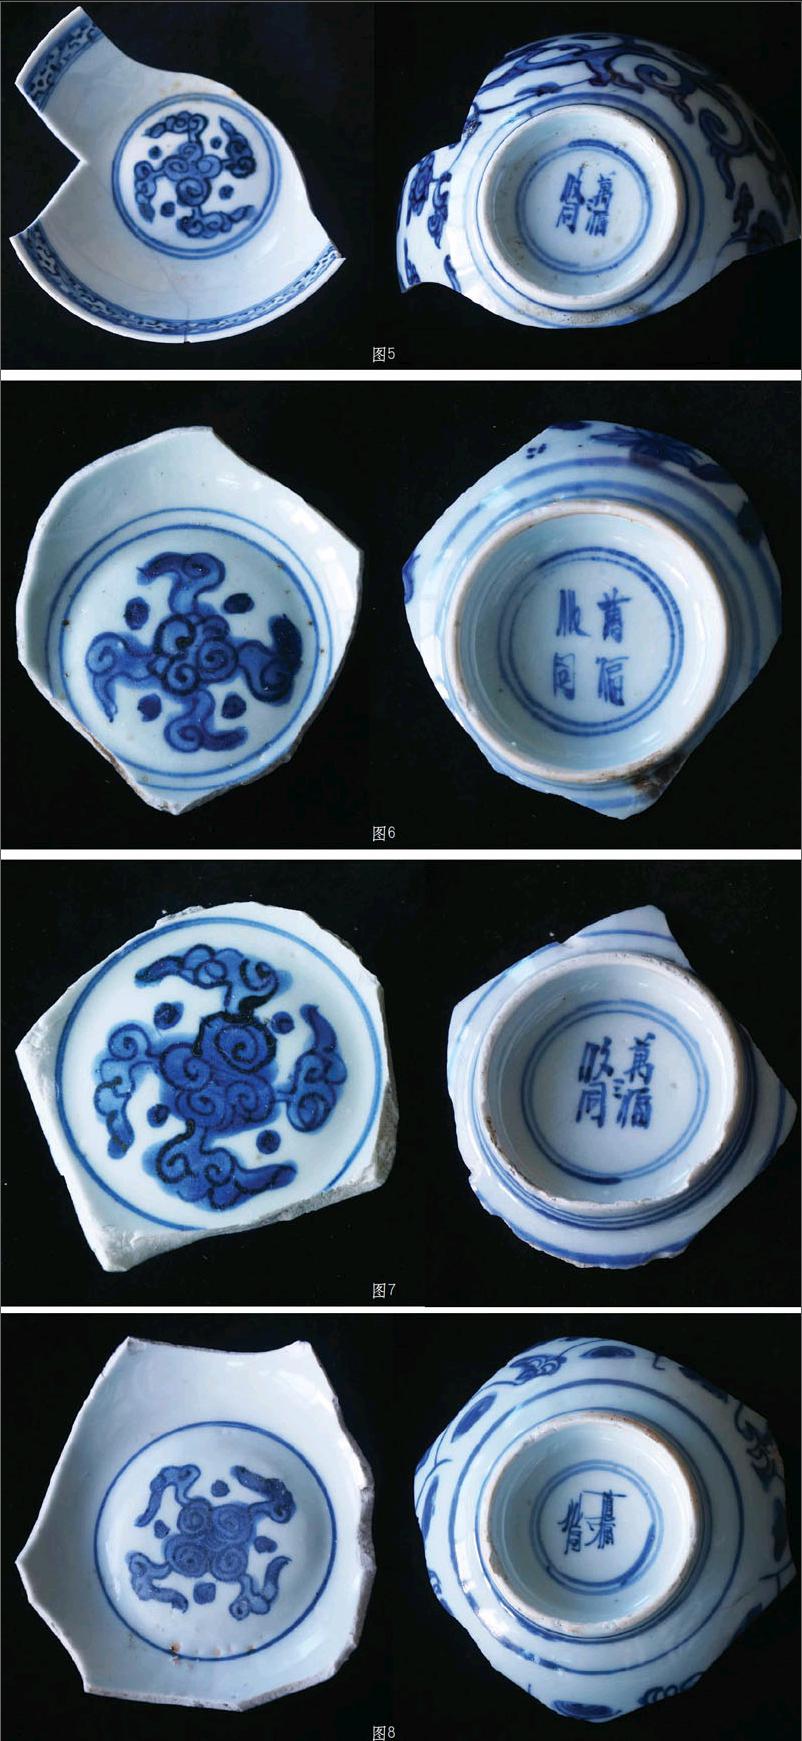 明代嘉靖年间,民窑瓷器上曾经突然流行起一种卍字云纹